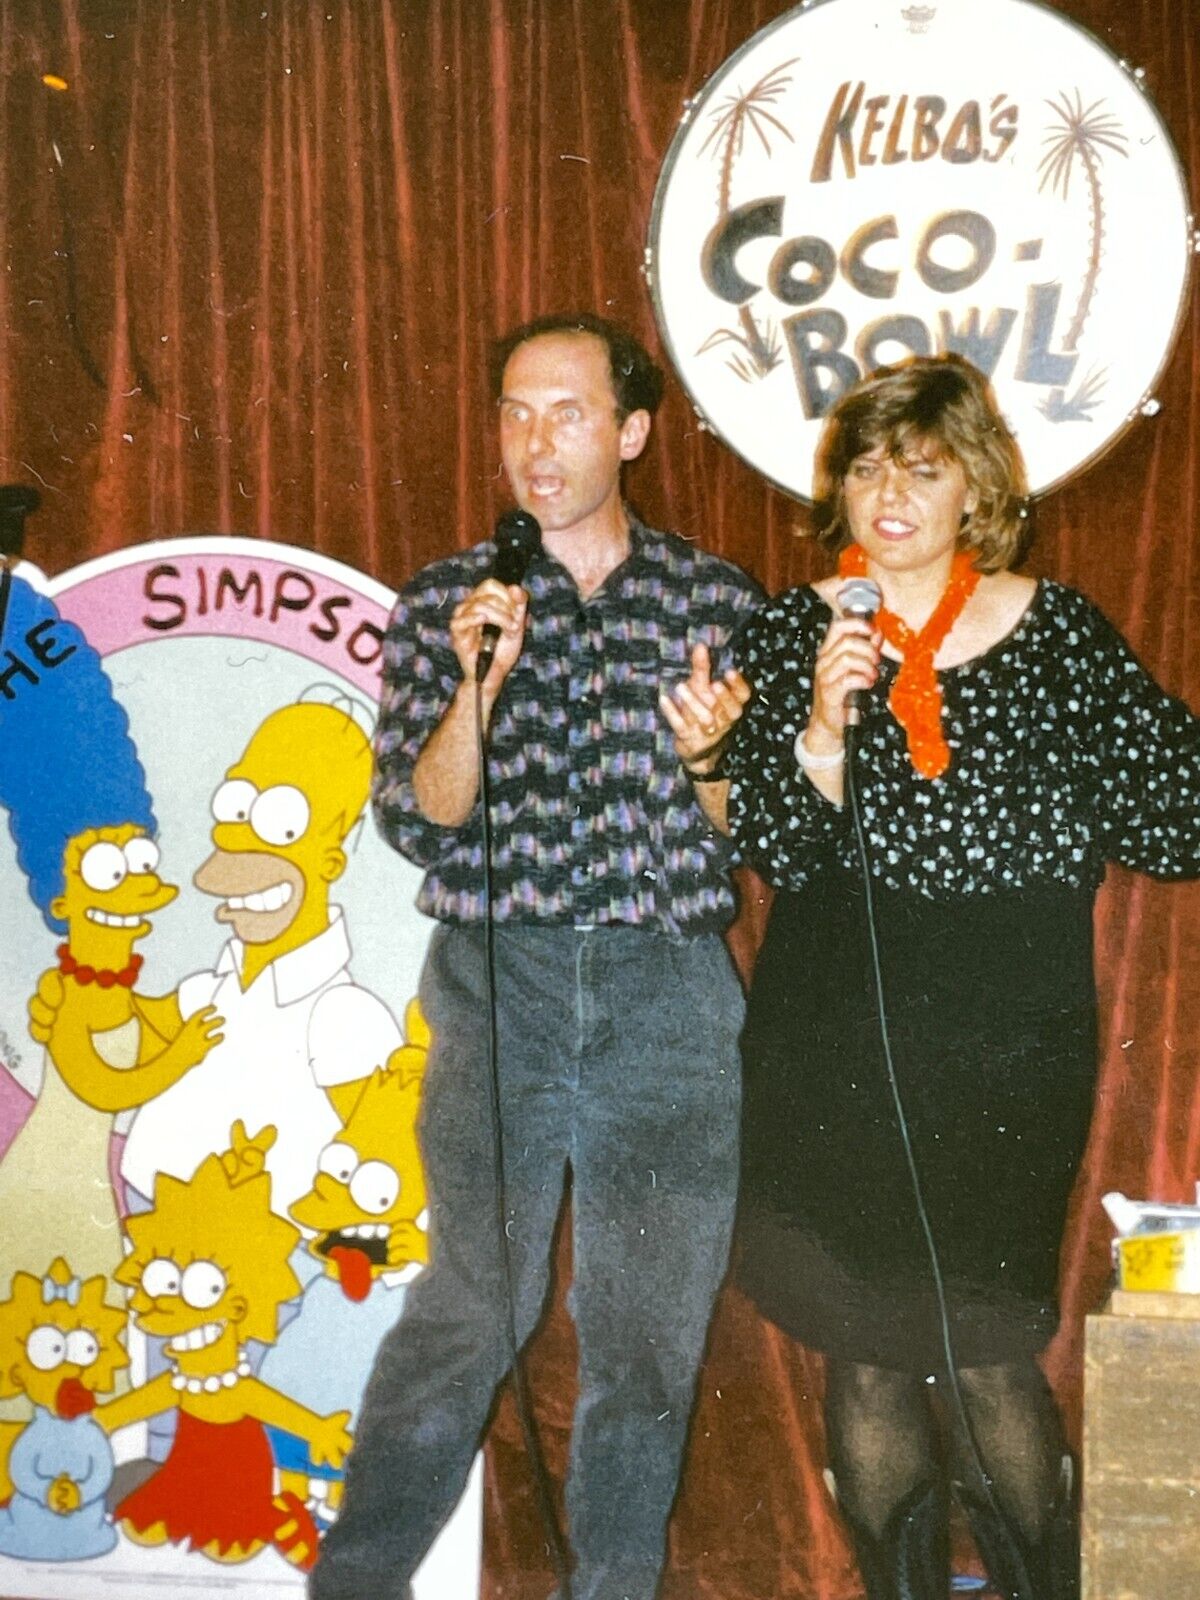 DB) Dan Castellaneta Homer Simpsons Actor Singing Karaoke Kelbos Coco Bowl Tiki 